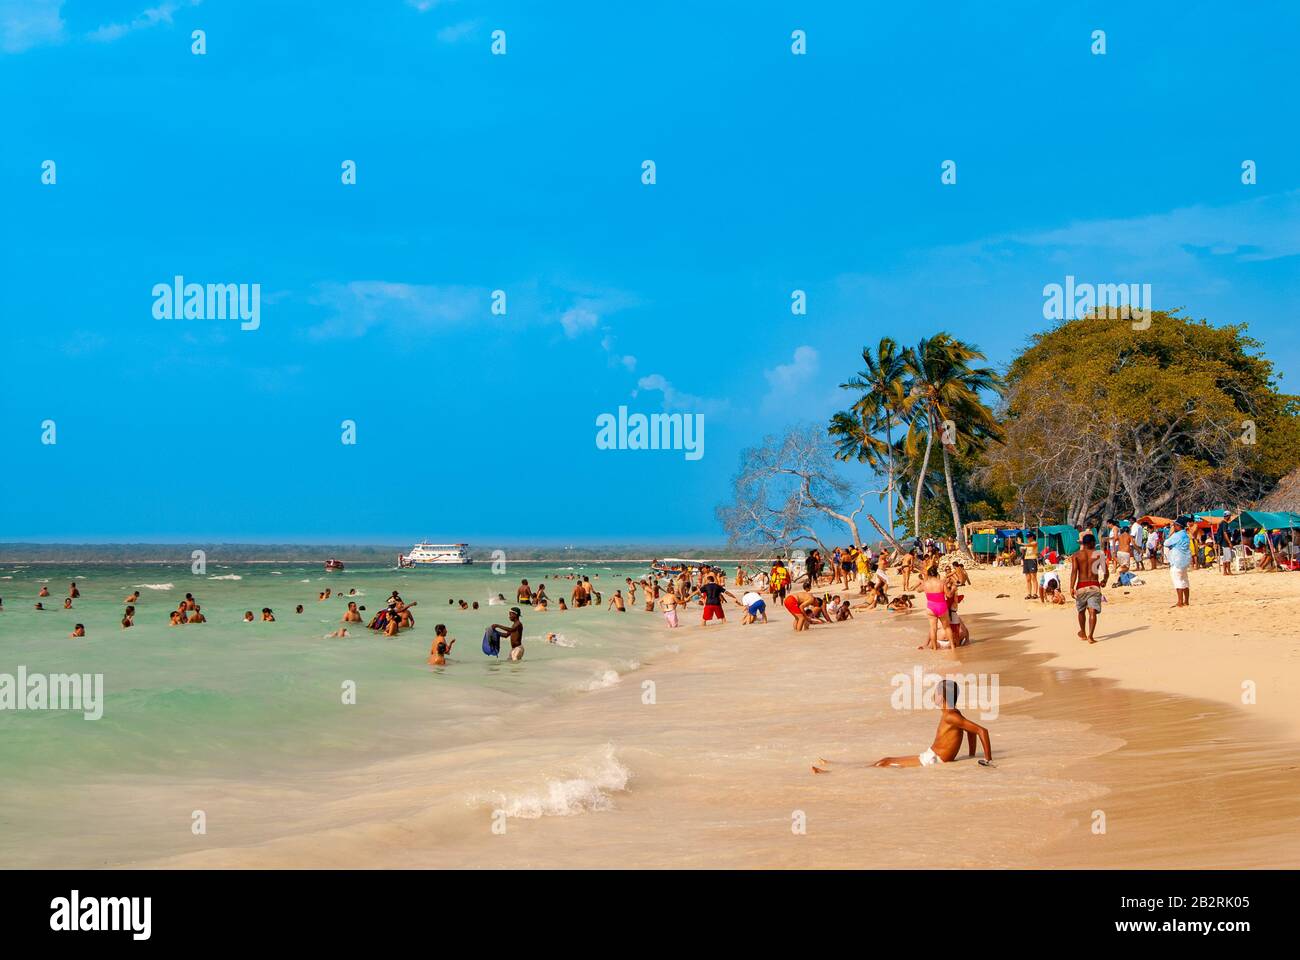 Playa Blanca on the Isla de Baru, Cartagena de Indias, Colombia Stock Photo